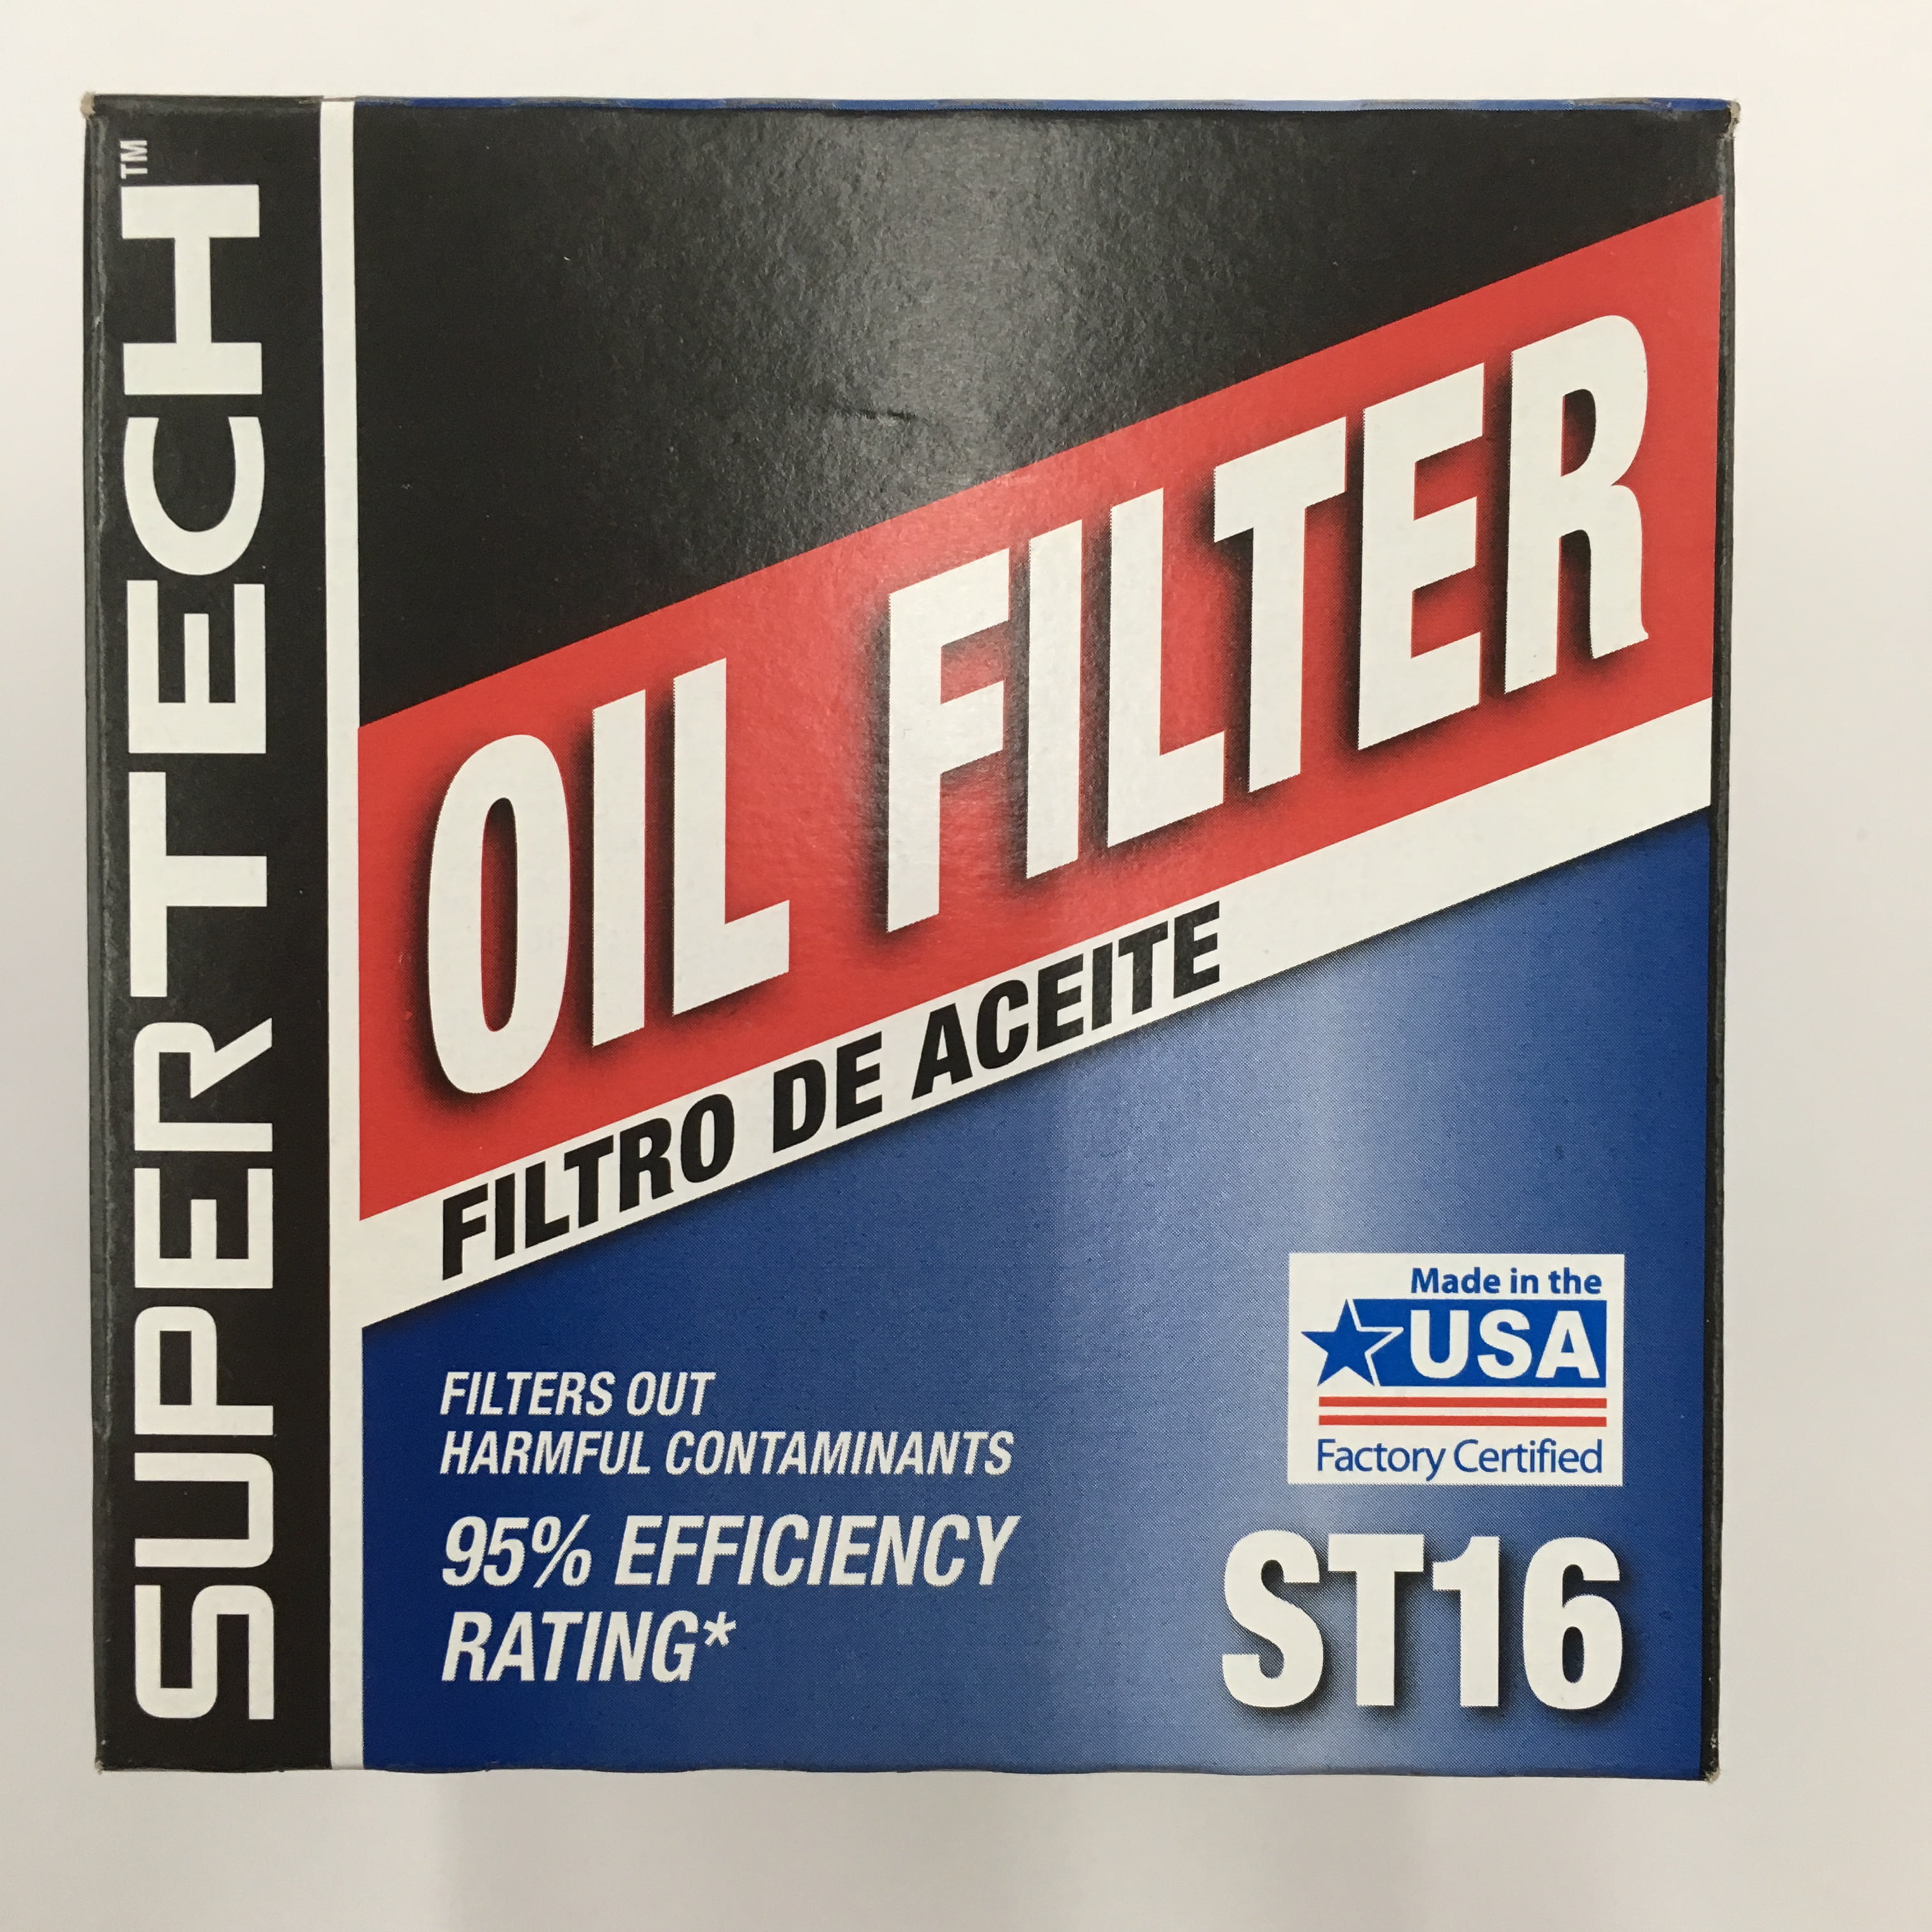 Super Tech Oil Filter Application Chart